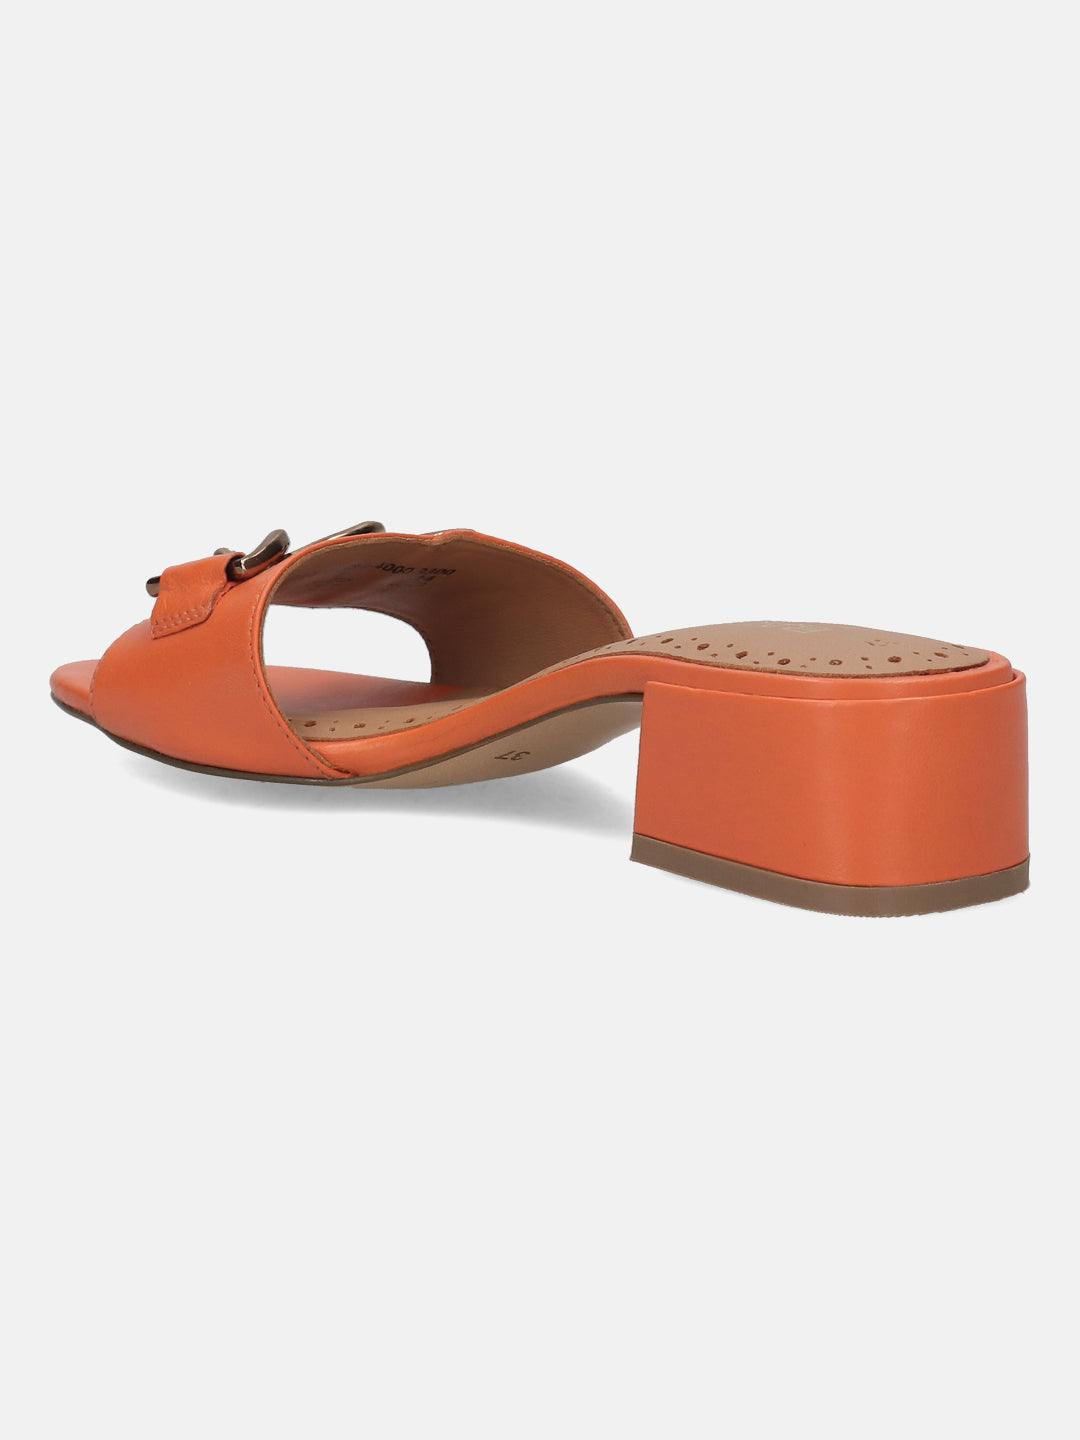 BAGATT Premium Leather Orange Mules